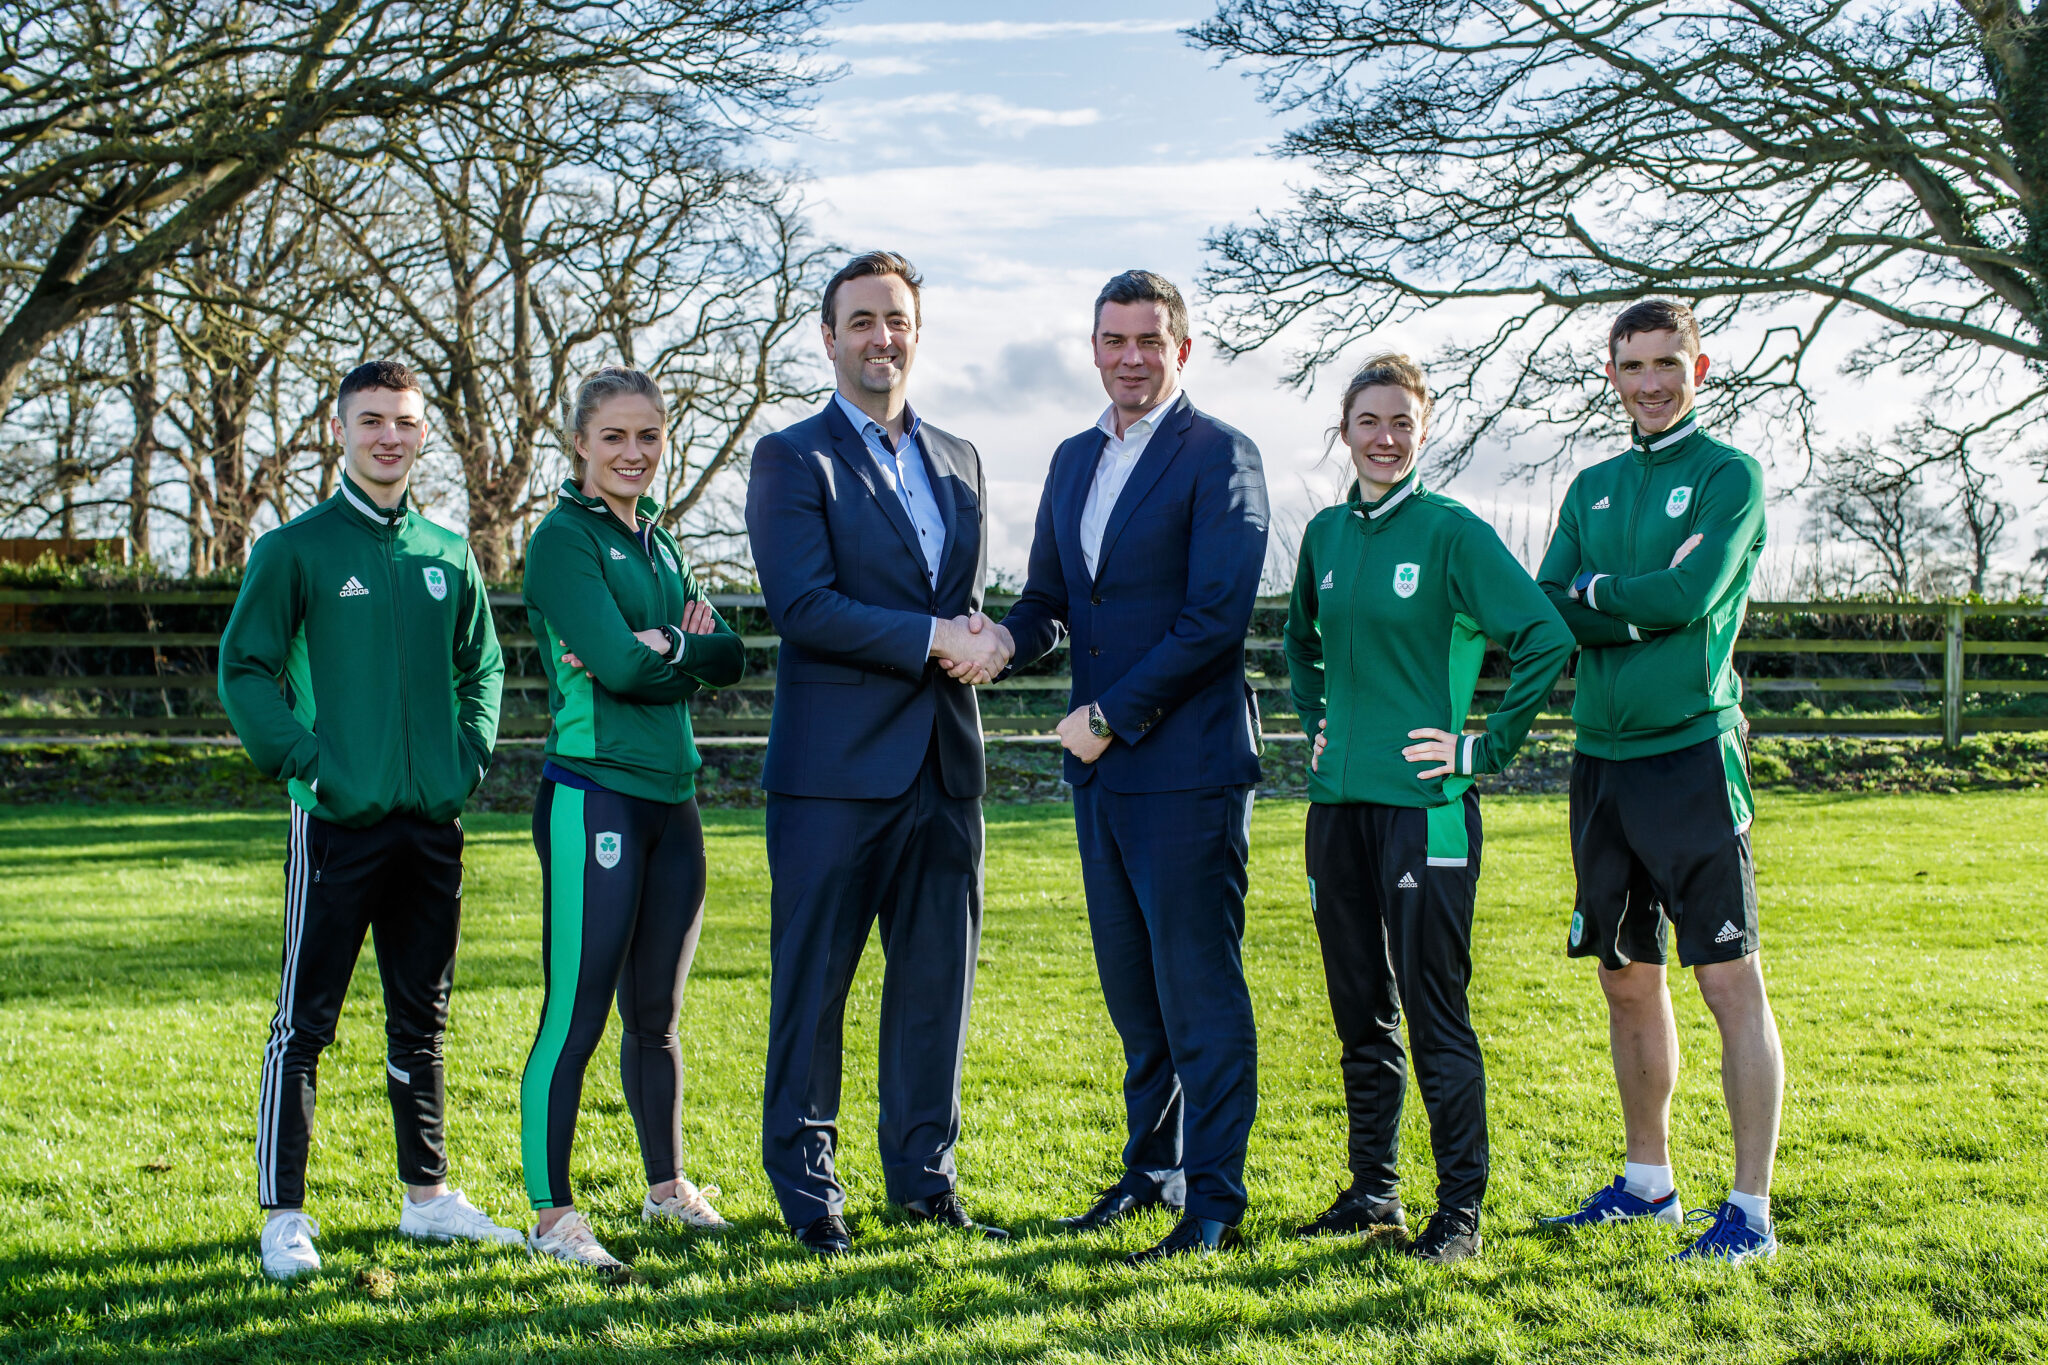 Discriminación Inspeccionar Quejar Team Ireland to Wear Adidas at Olympics - Sport for Business